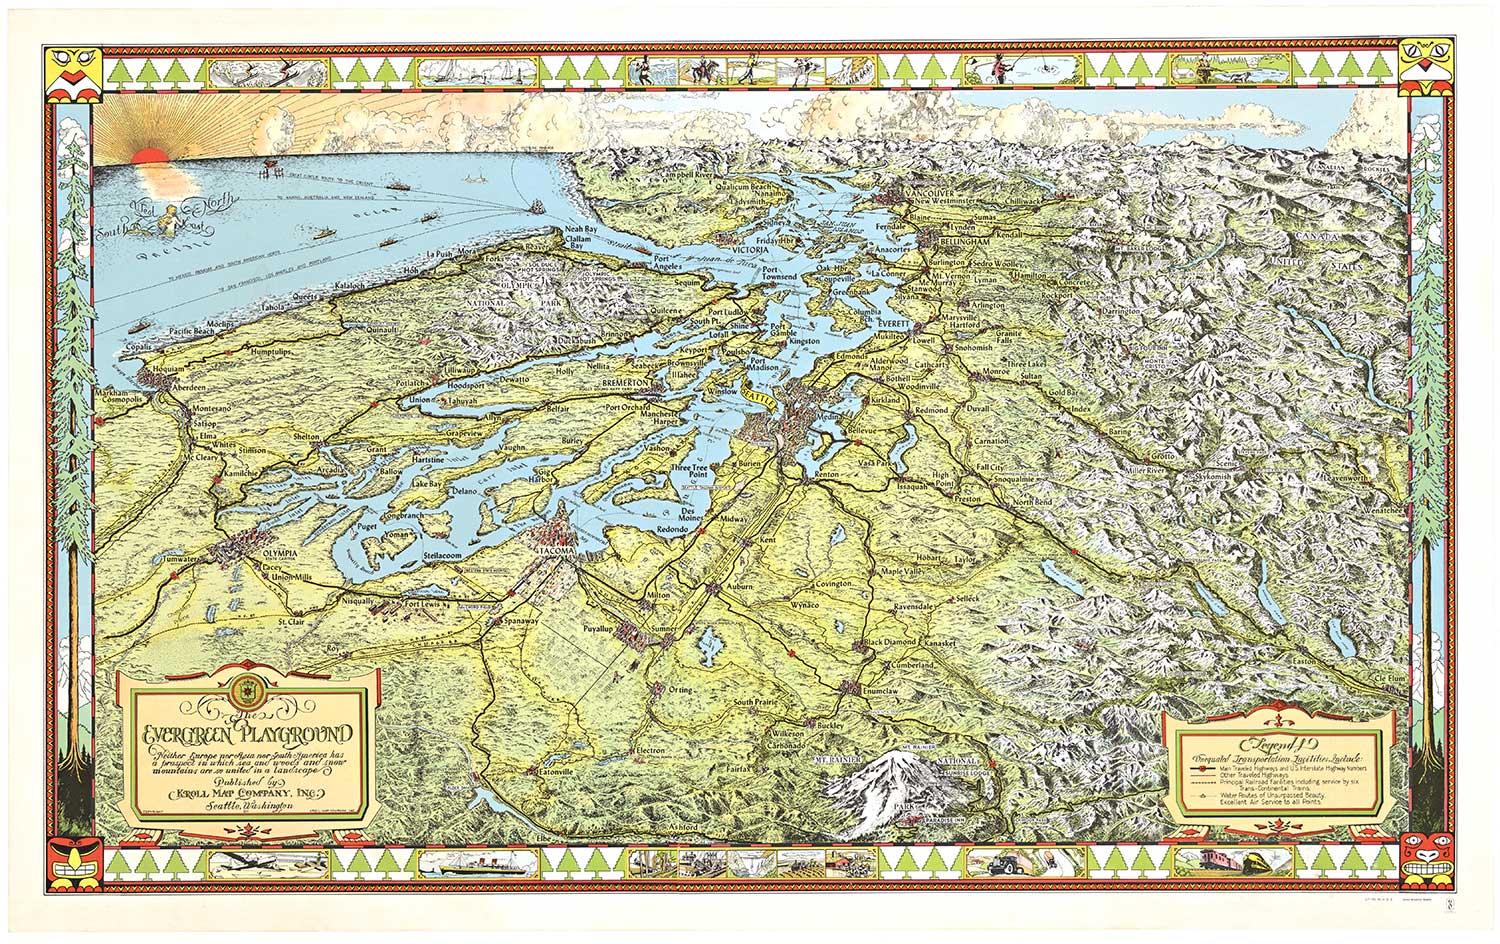 Carte originale de l'État de Washington oriental « The Evergreen Playground » (le terrain de jeu du Evergreen) 